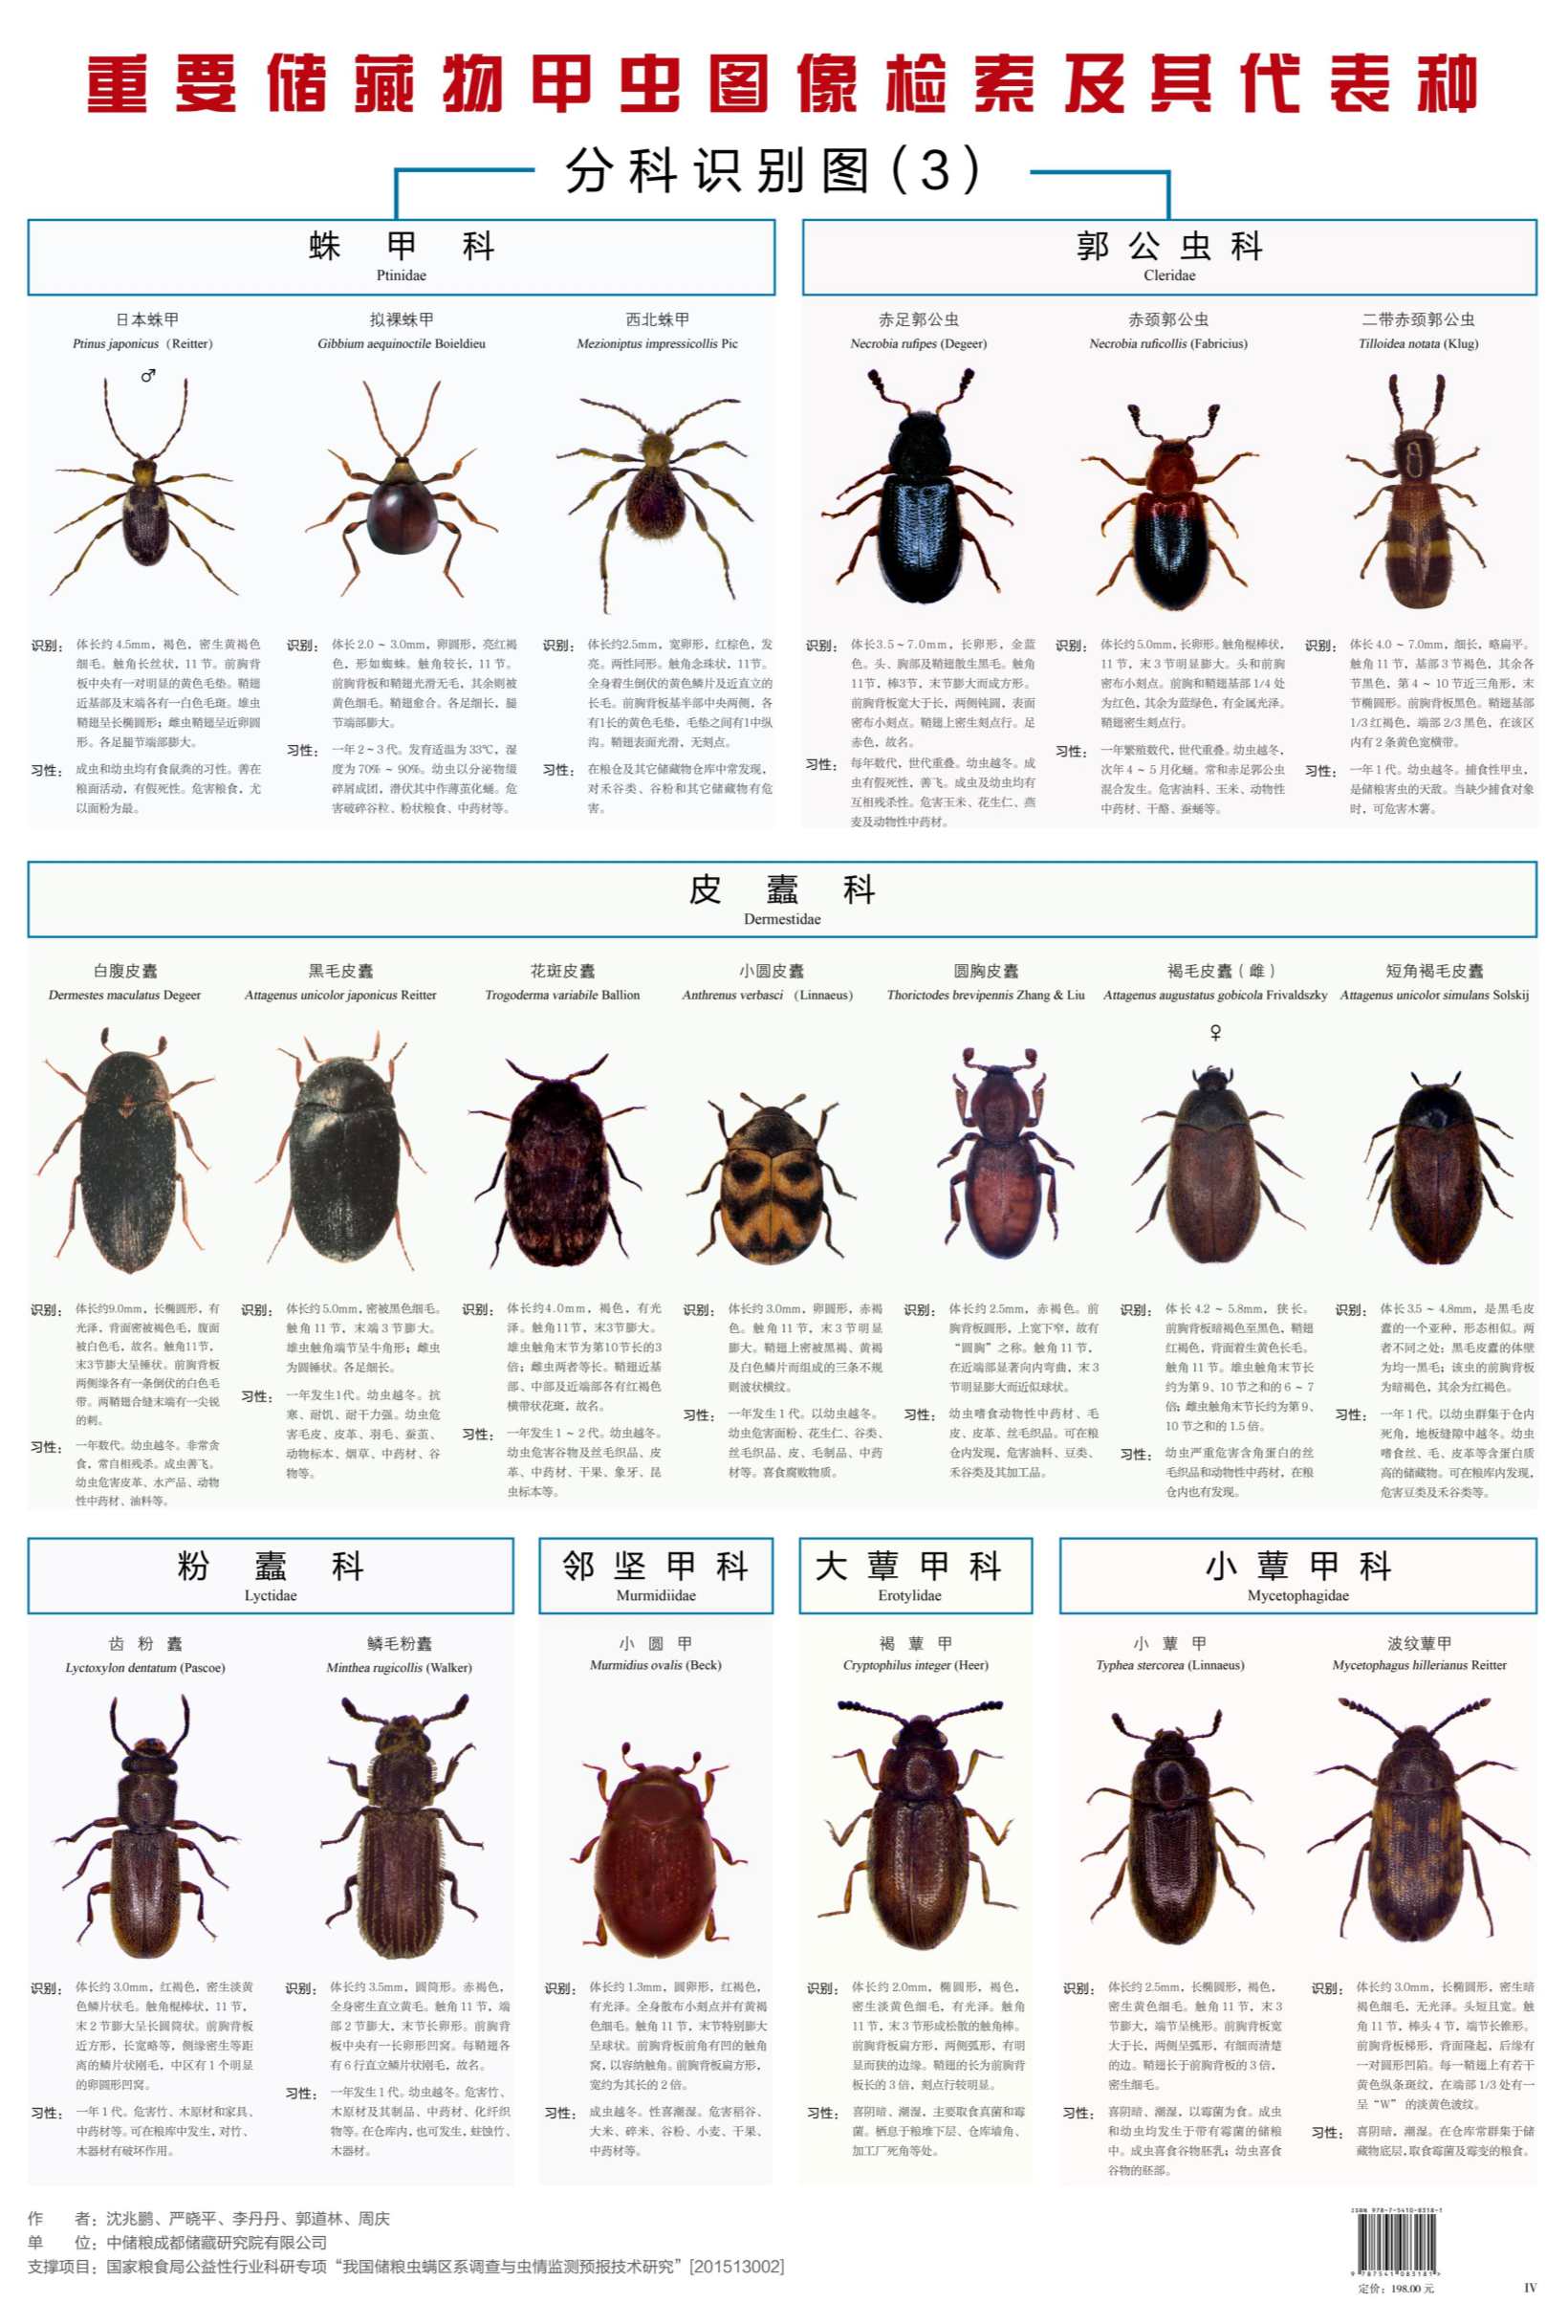 图文 《重要储藏物甲虫图像检索及其代表种》图谱_4_副本.jpg